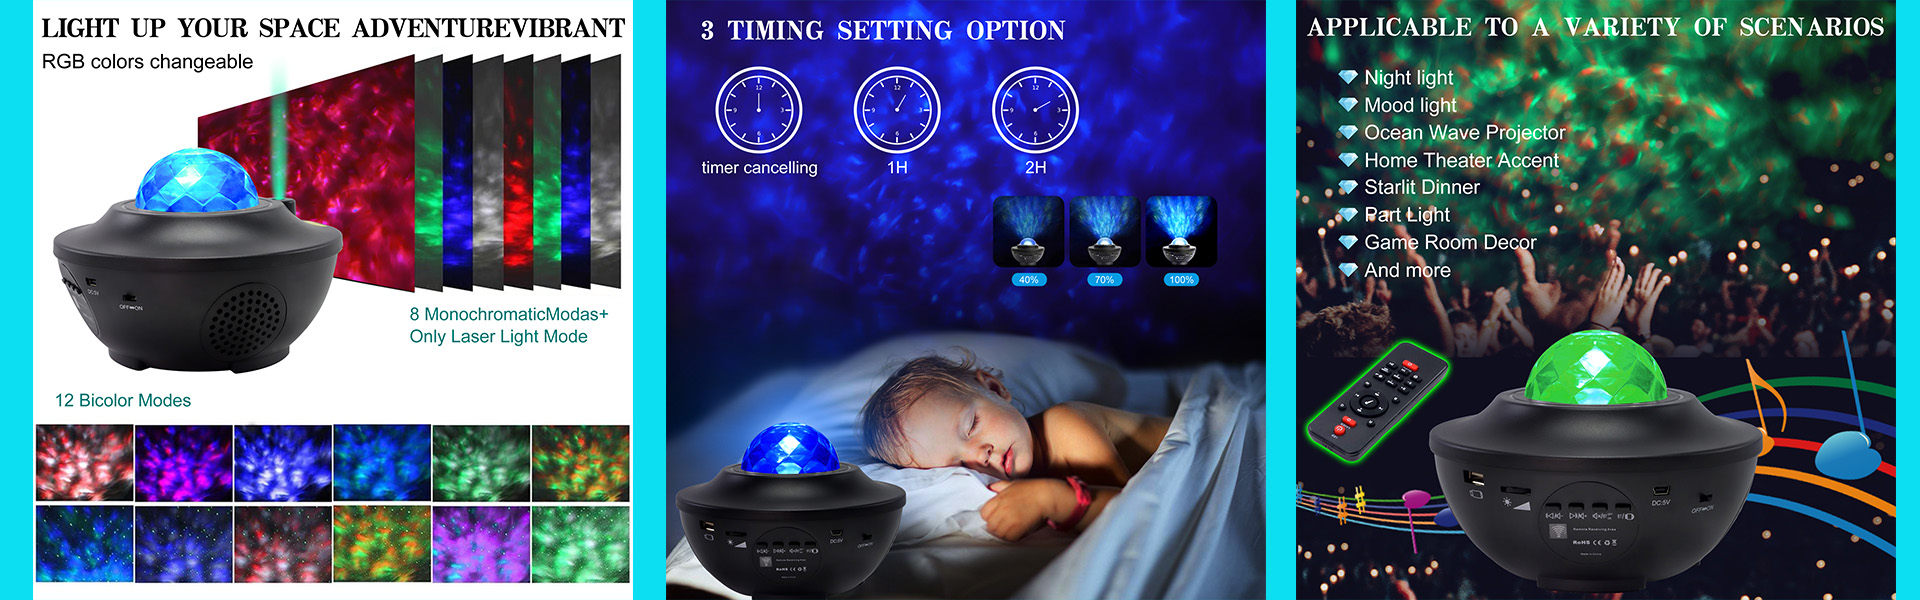 Cuivre String Lumière, projecteur étoilé, lumière denuit 3D,Xingan Xian Yixing Electronics Co., Ltd.